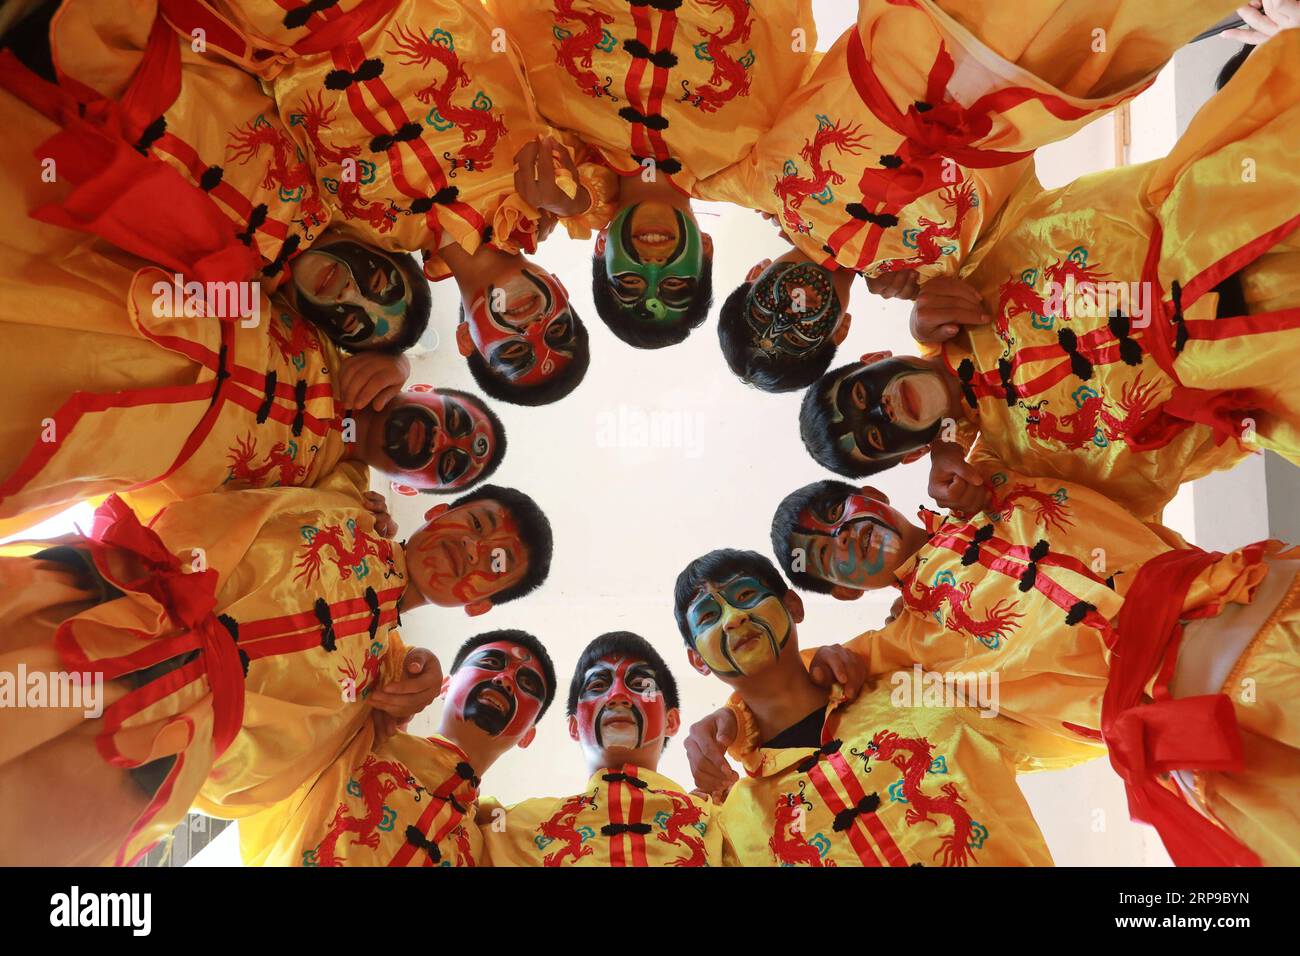 (190402) -- JINPING, 2 aprile 2019 (Xinhua) -- gli studenti della Longli Middle and Primary School posano per le foto nella contea di Jinping, nella provincia di Guizhou nella Cina sud-occidentale, il 20 marzo 2019. Classificata come patrimonio culturale immateriale della provincia di Guizhou nel 2005, la danza del drago di Longli ha una storia di oltre 600 anni. E' caratterizzata da un bel volto dipinto dei ballerini. Dal 2008, la danza del drago di Longli è stata introdotta nella scuola media e primaria di Longli, i cui studenti godono di due ore a settimana con maestri di danza del drago per imparare la creazione di costumi, le abilità di danza e le arti della pittura del viso Da Foto Stock